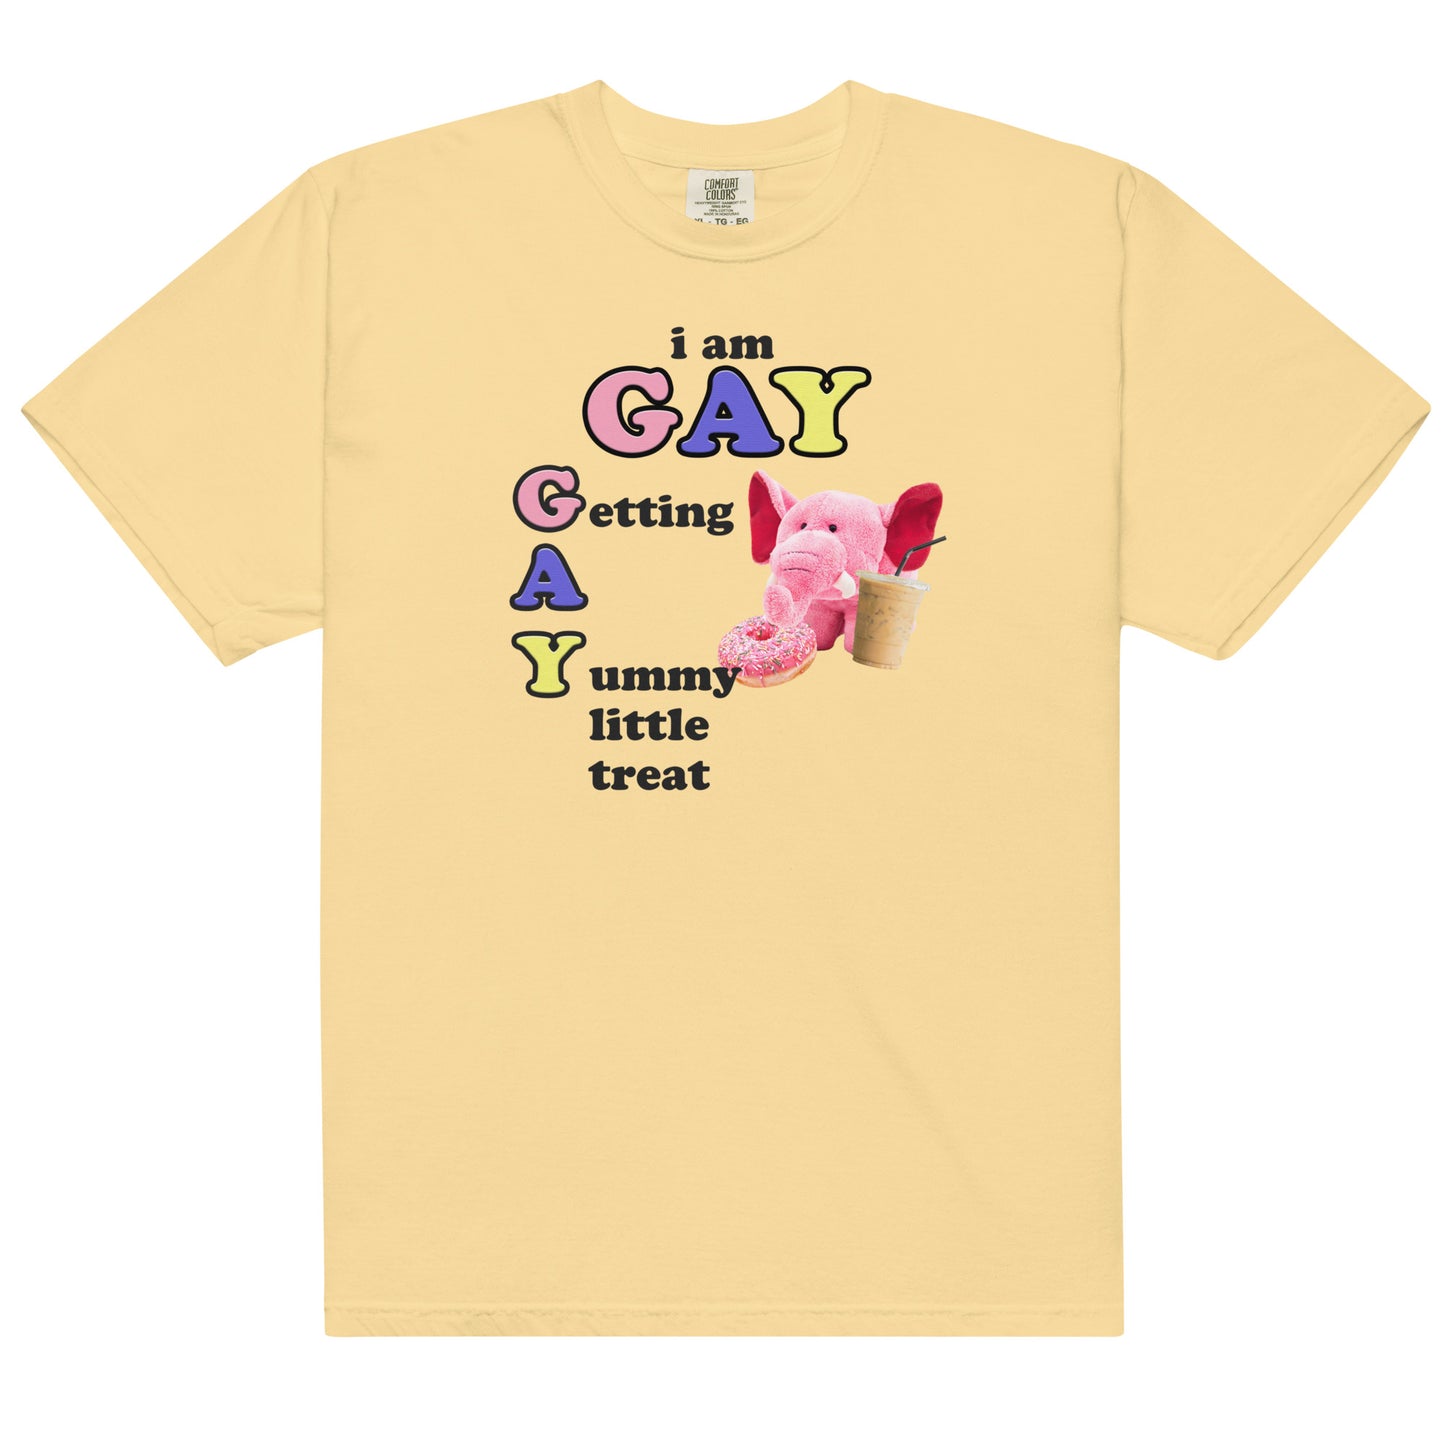 GAY (Getting a Yummy Treat) Unisex t-shirt